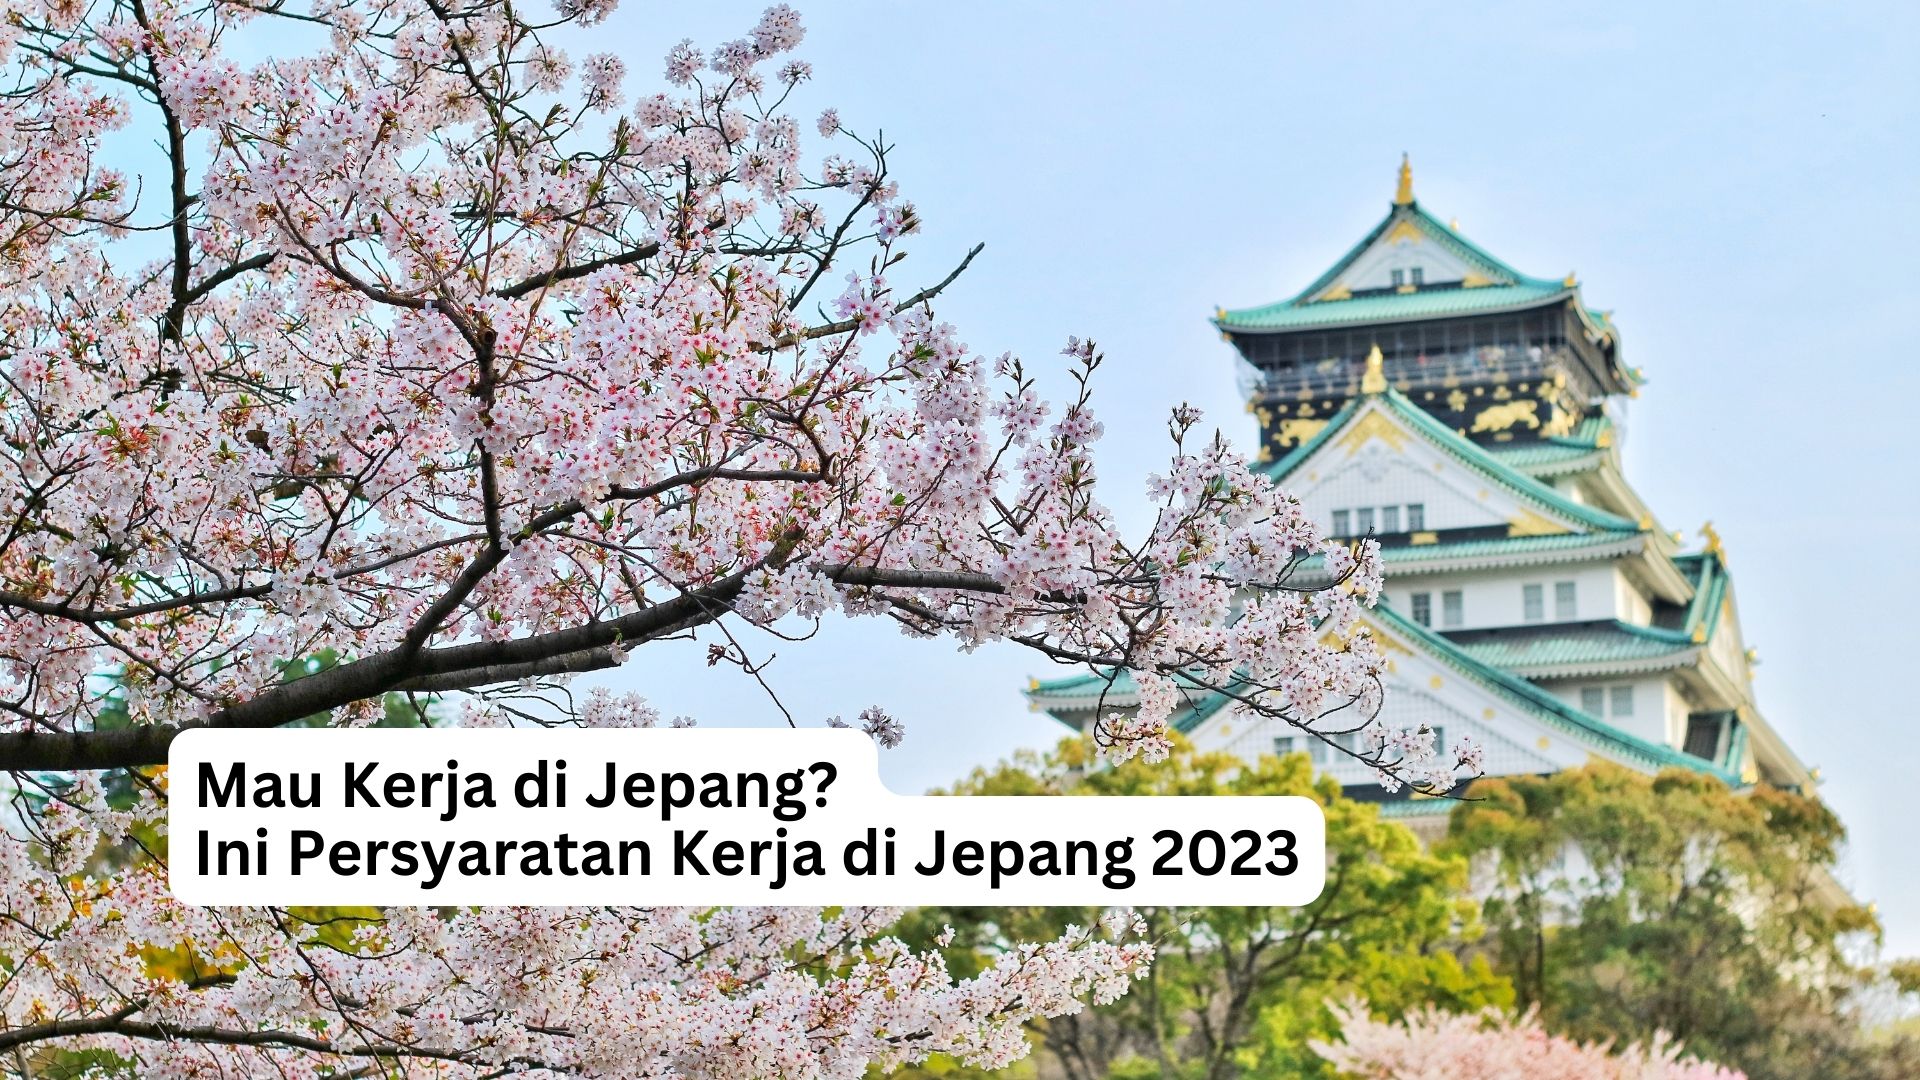 You are currently viewing Mau Kerja di Jepang? Ini Persyaratan Kerja di Jepang 2023